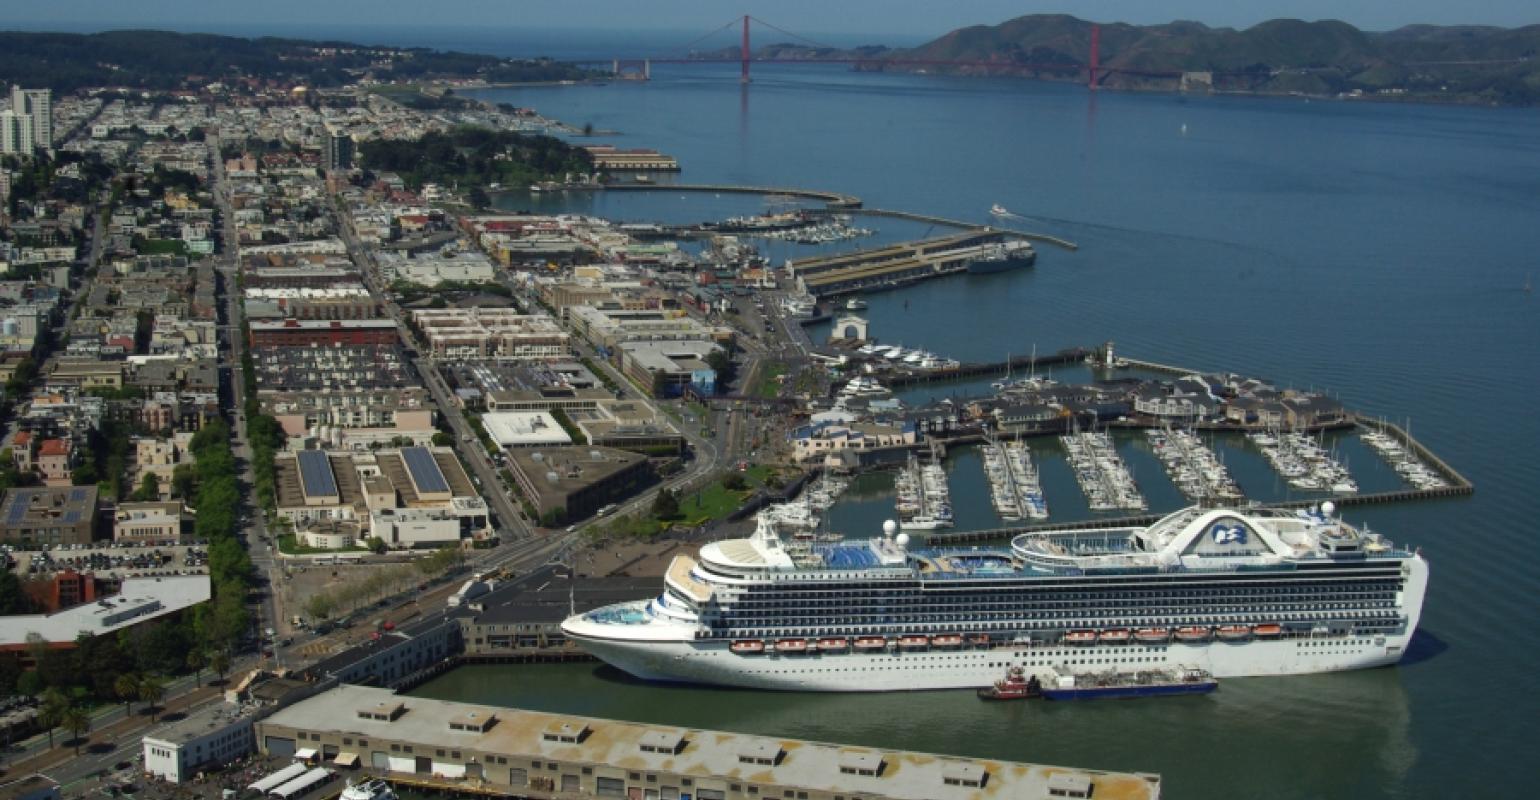 where do oceania cruise ships dock in san francisco